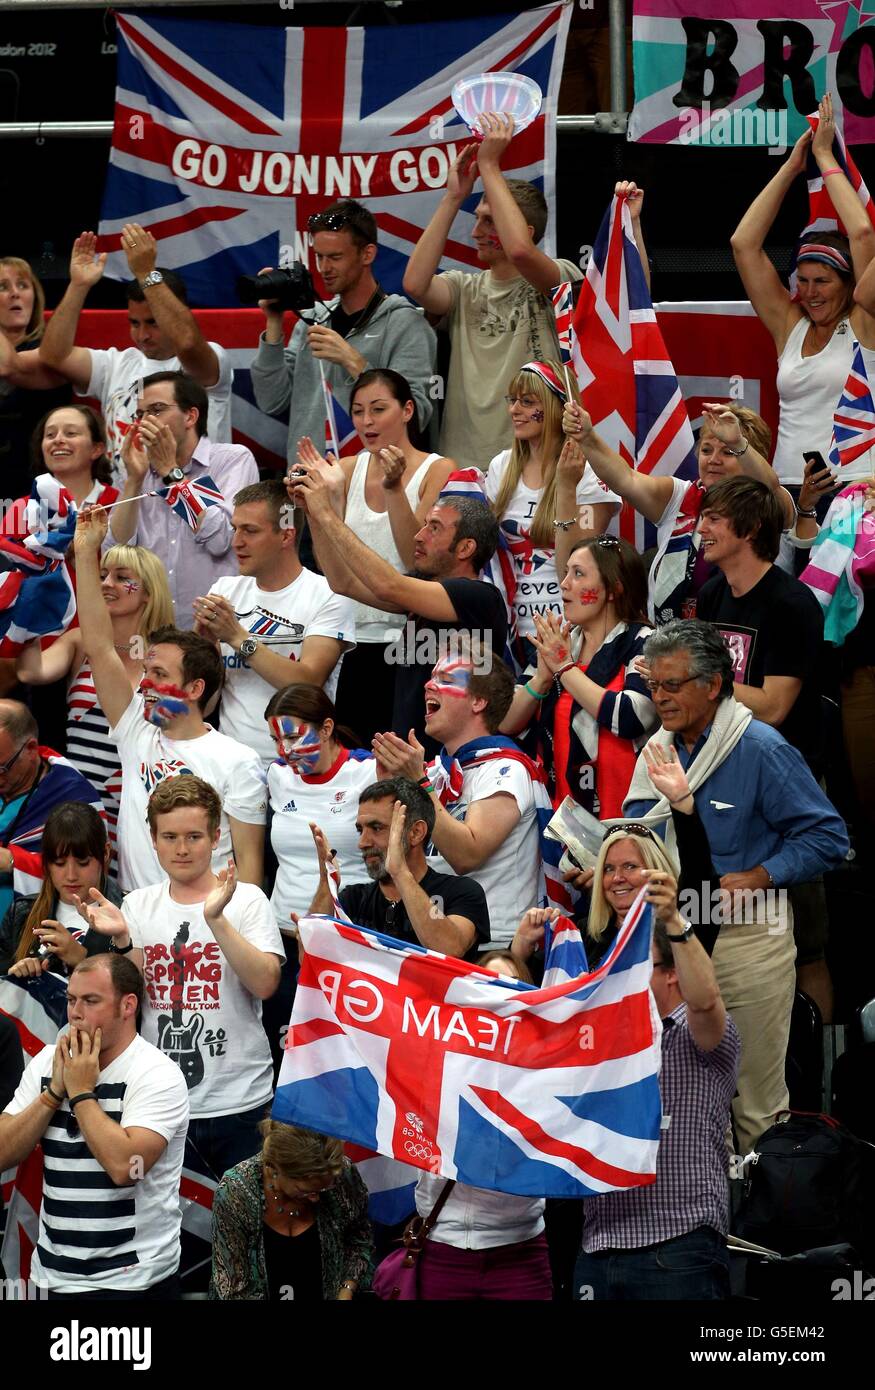 GB-Fans jubeln während des Wheelchair Rugby gegen Frankreich in der Basketball-Arena im Olympic Park London für das britische Rugby-Team. Stockfoto